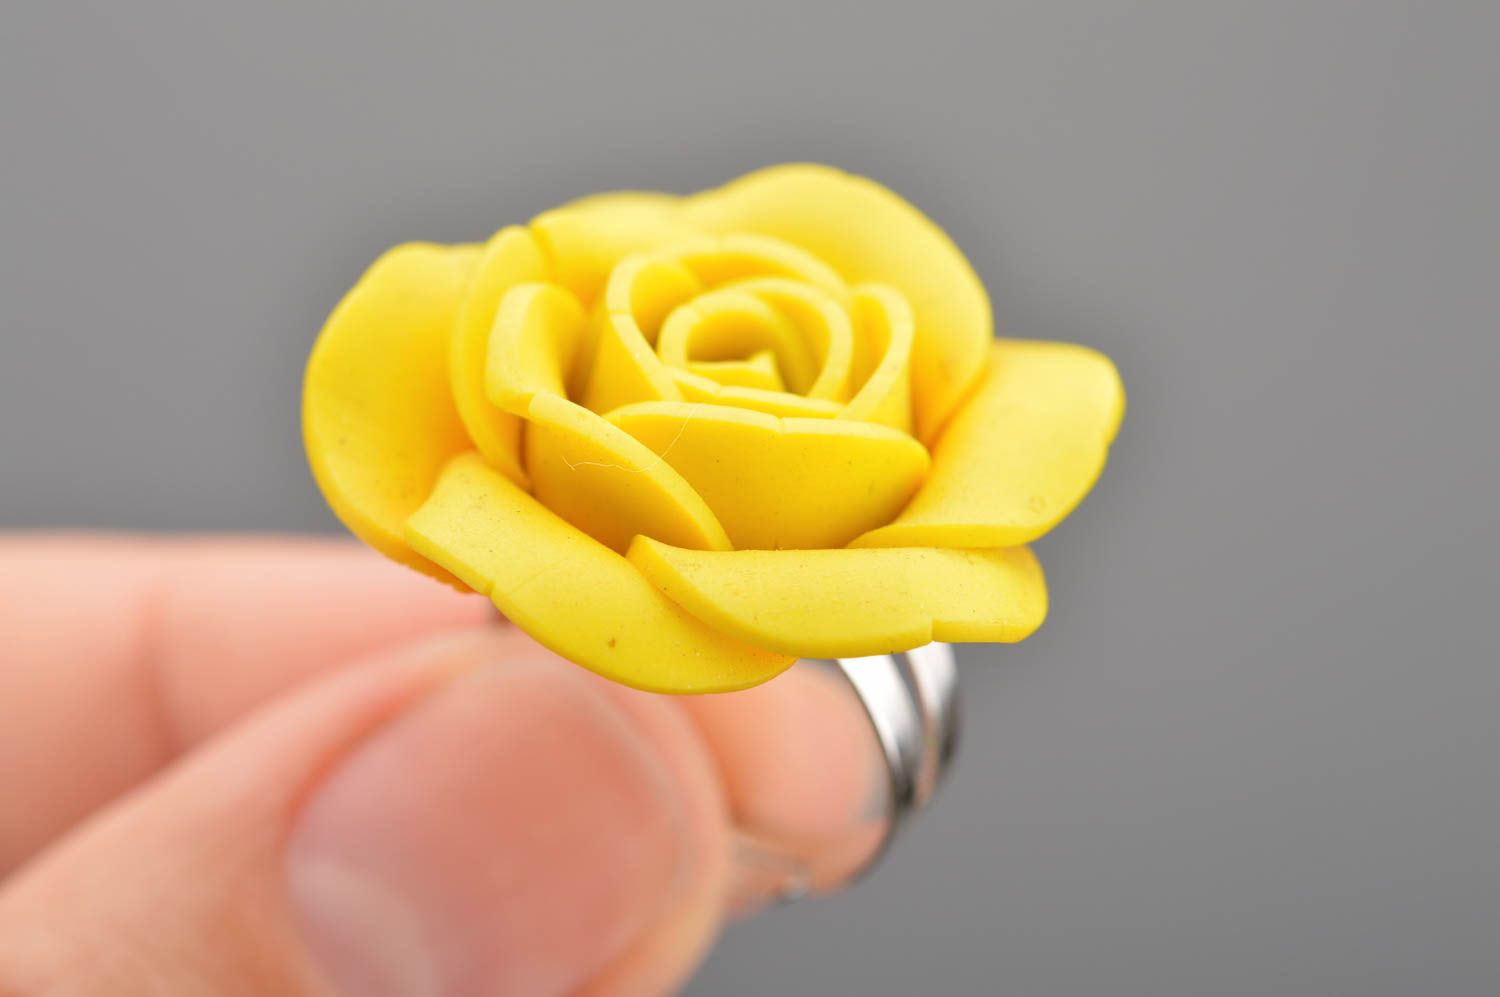 Кольцо из полимерной глины в виде объемной желтой розы ручной работы авторское фото 2